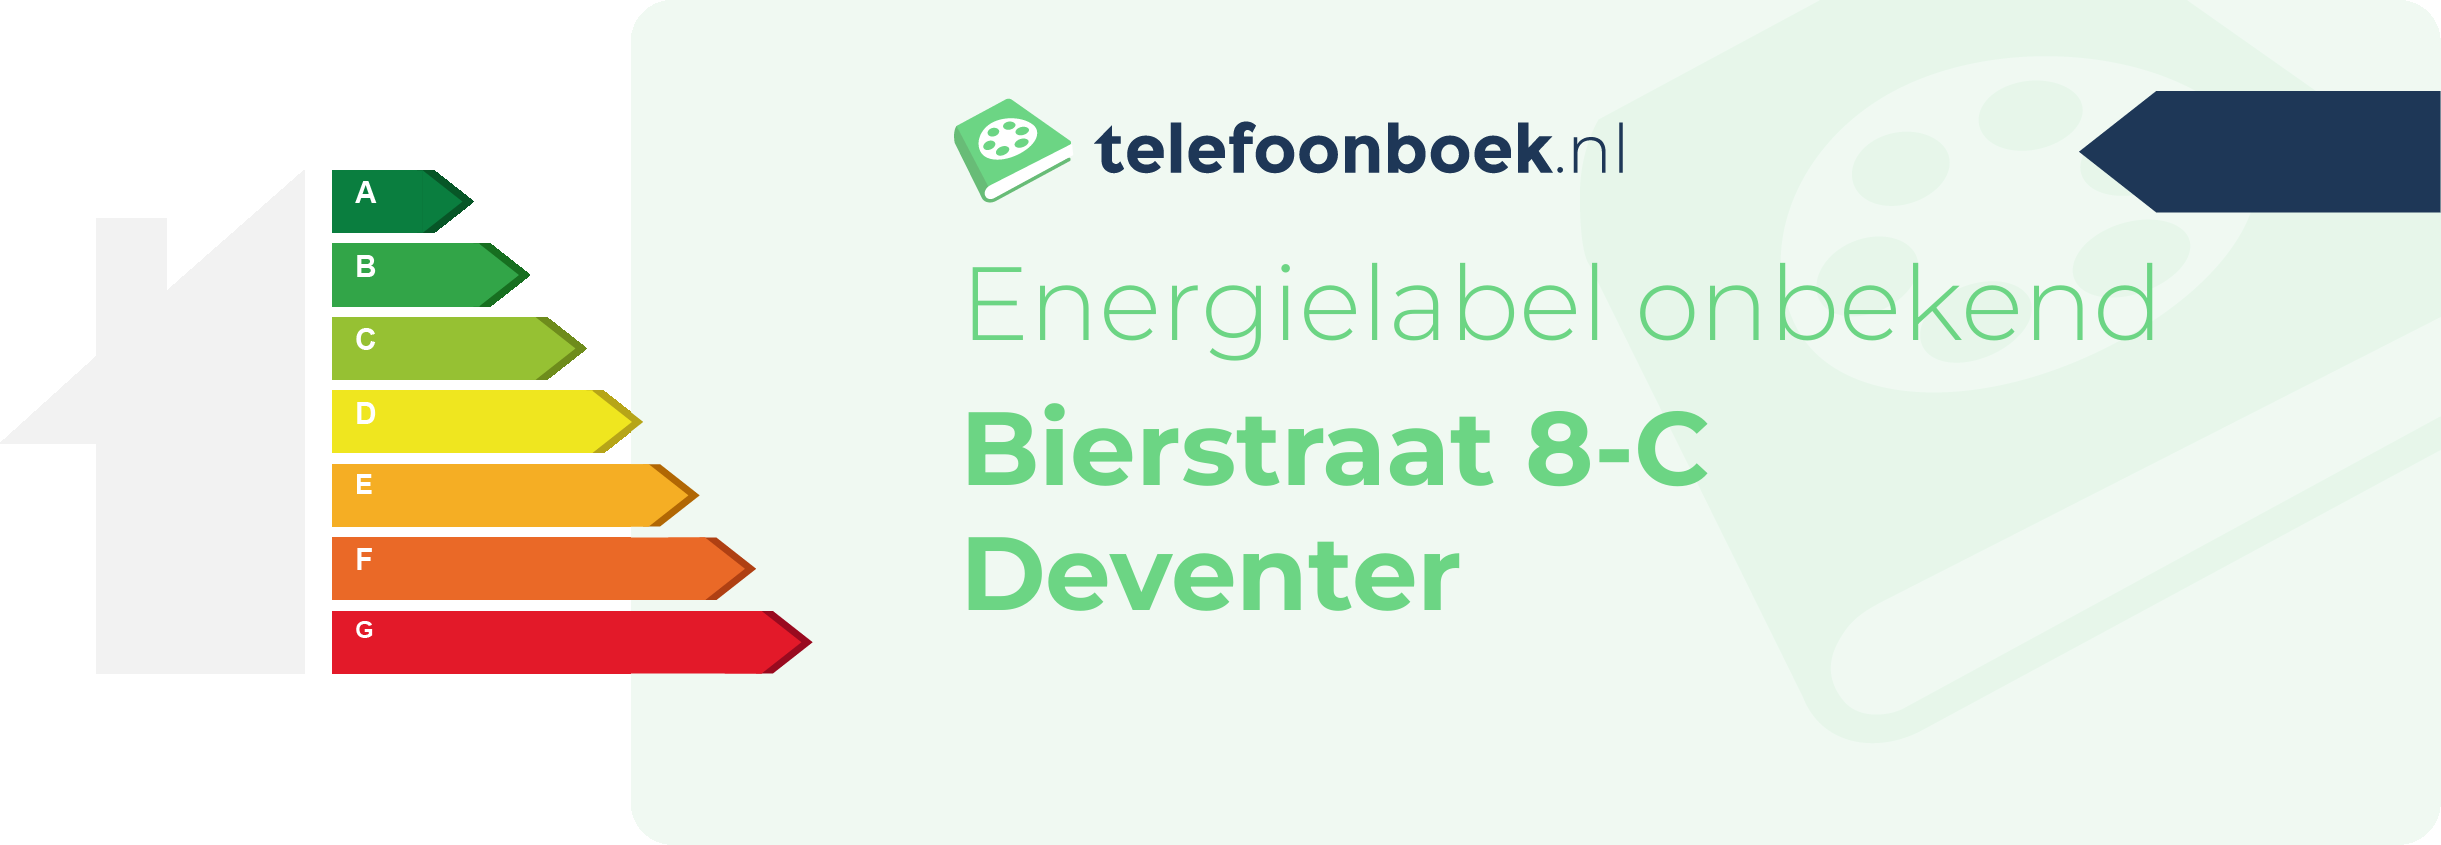 Energielabel Bierstraat 8-C Deventer